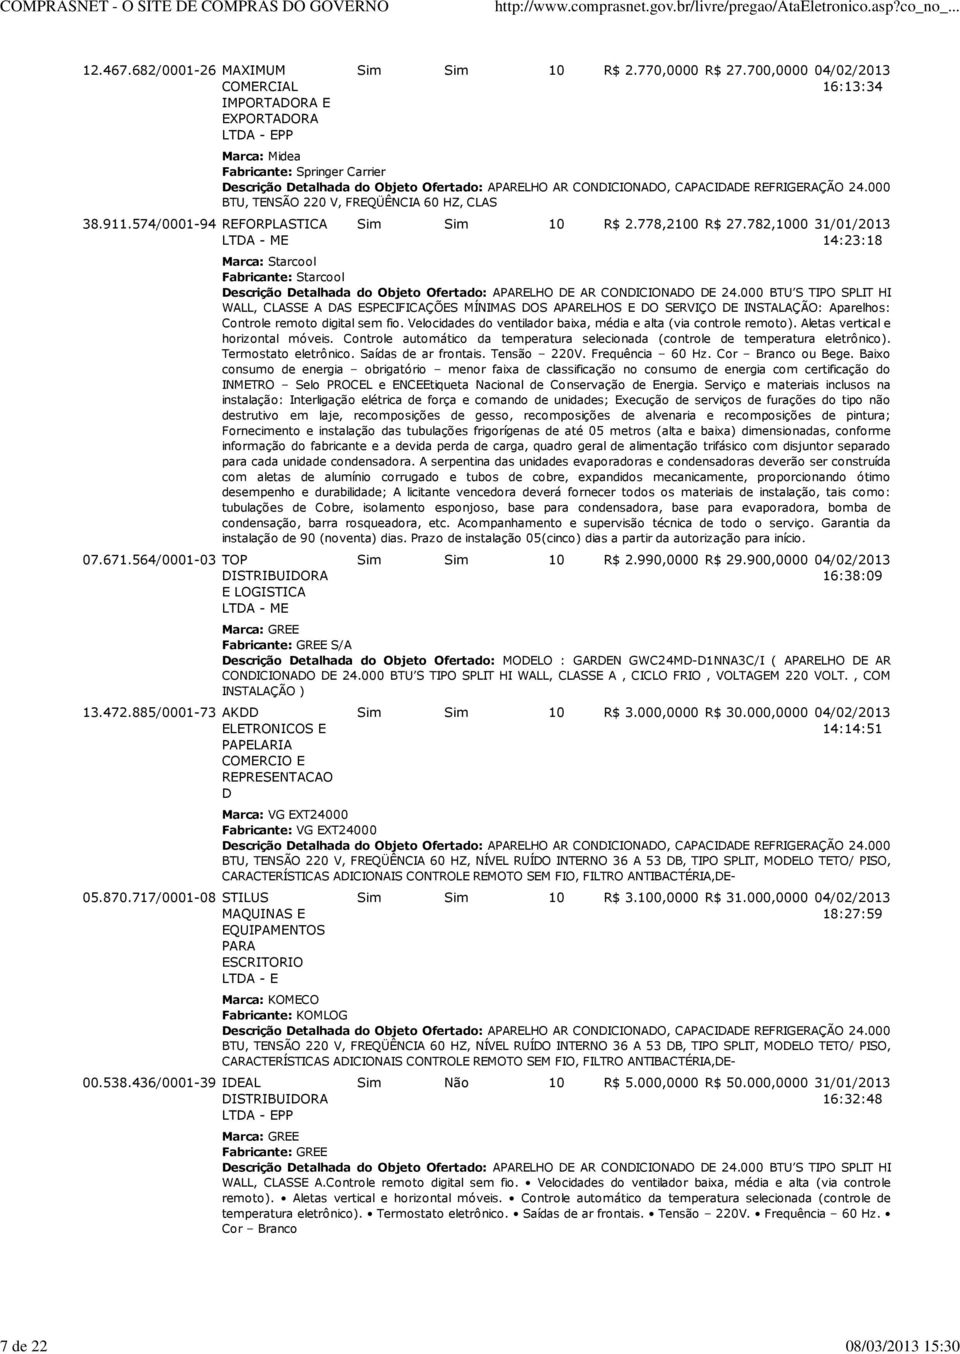 700,0000 04/02/2013 16:13:34 Marca: Midea Fabricante: Springer Carrier Descrição Detalhada do Objeto Ofertado: APARELHO AR CONDICIONADO, CAPACIDADE REFRIGERAÇÃO 24.